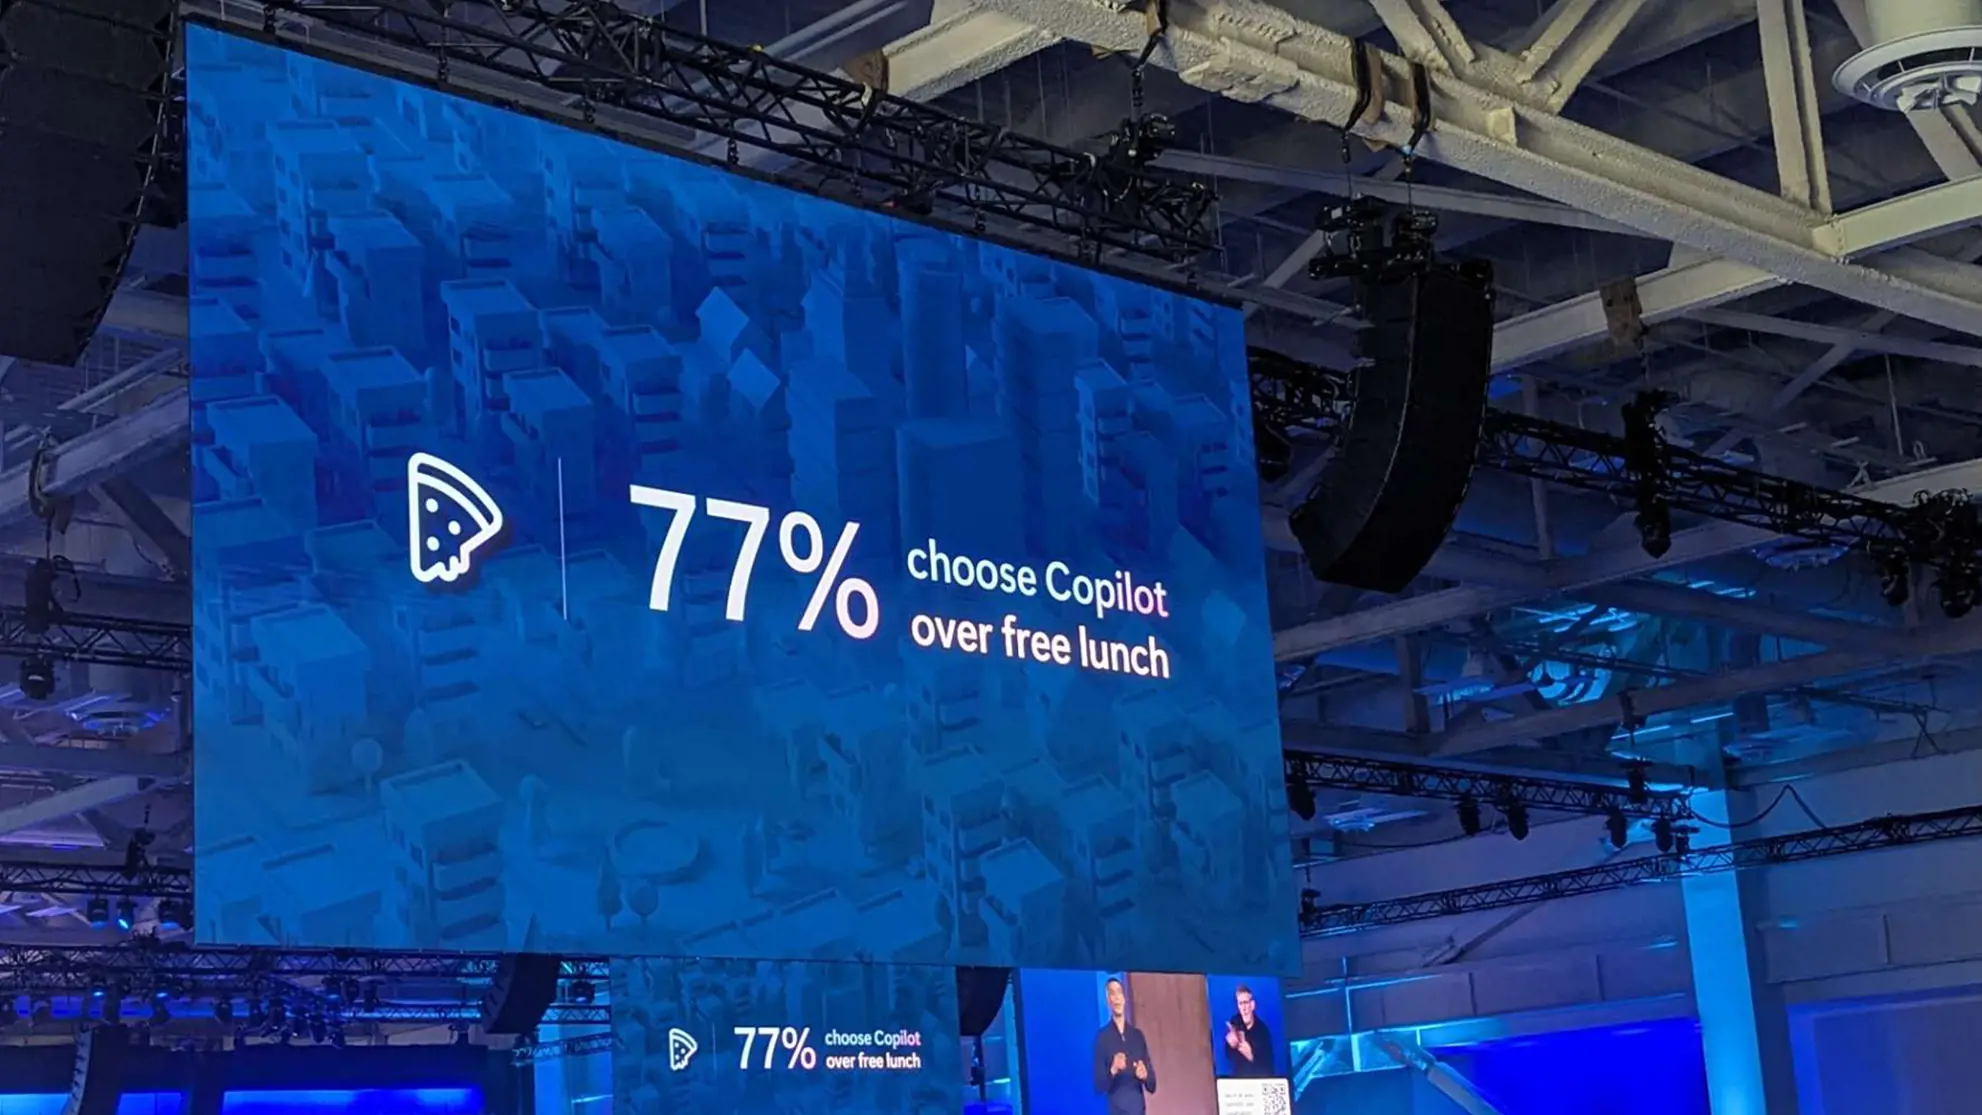 Screen an der Microsoft Ignite, mit Quote, dass Copilot 77% Copilot wählen